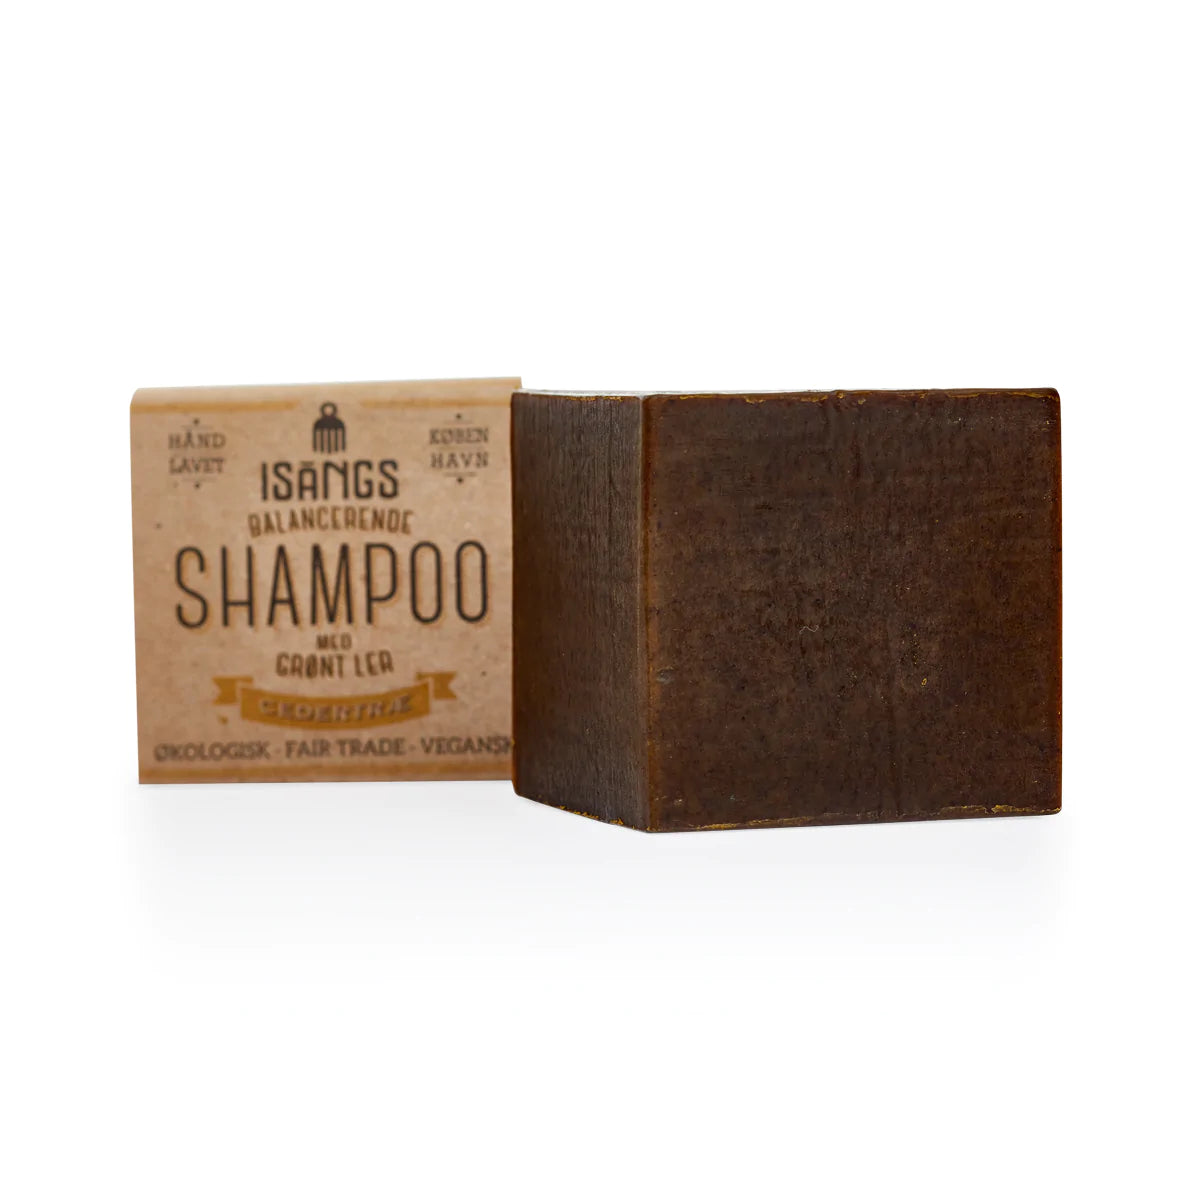 Shampoo | Cedertræ